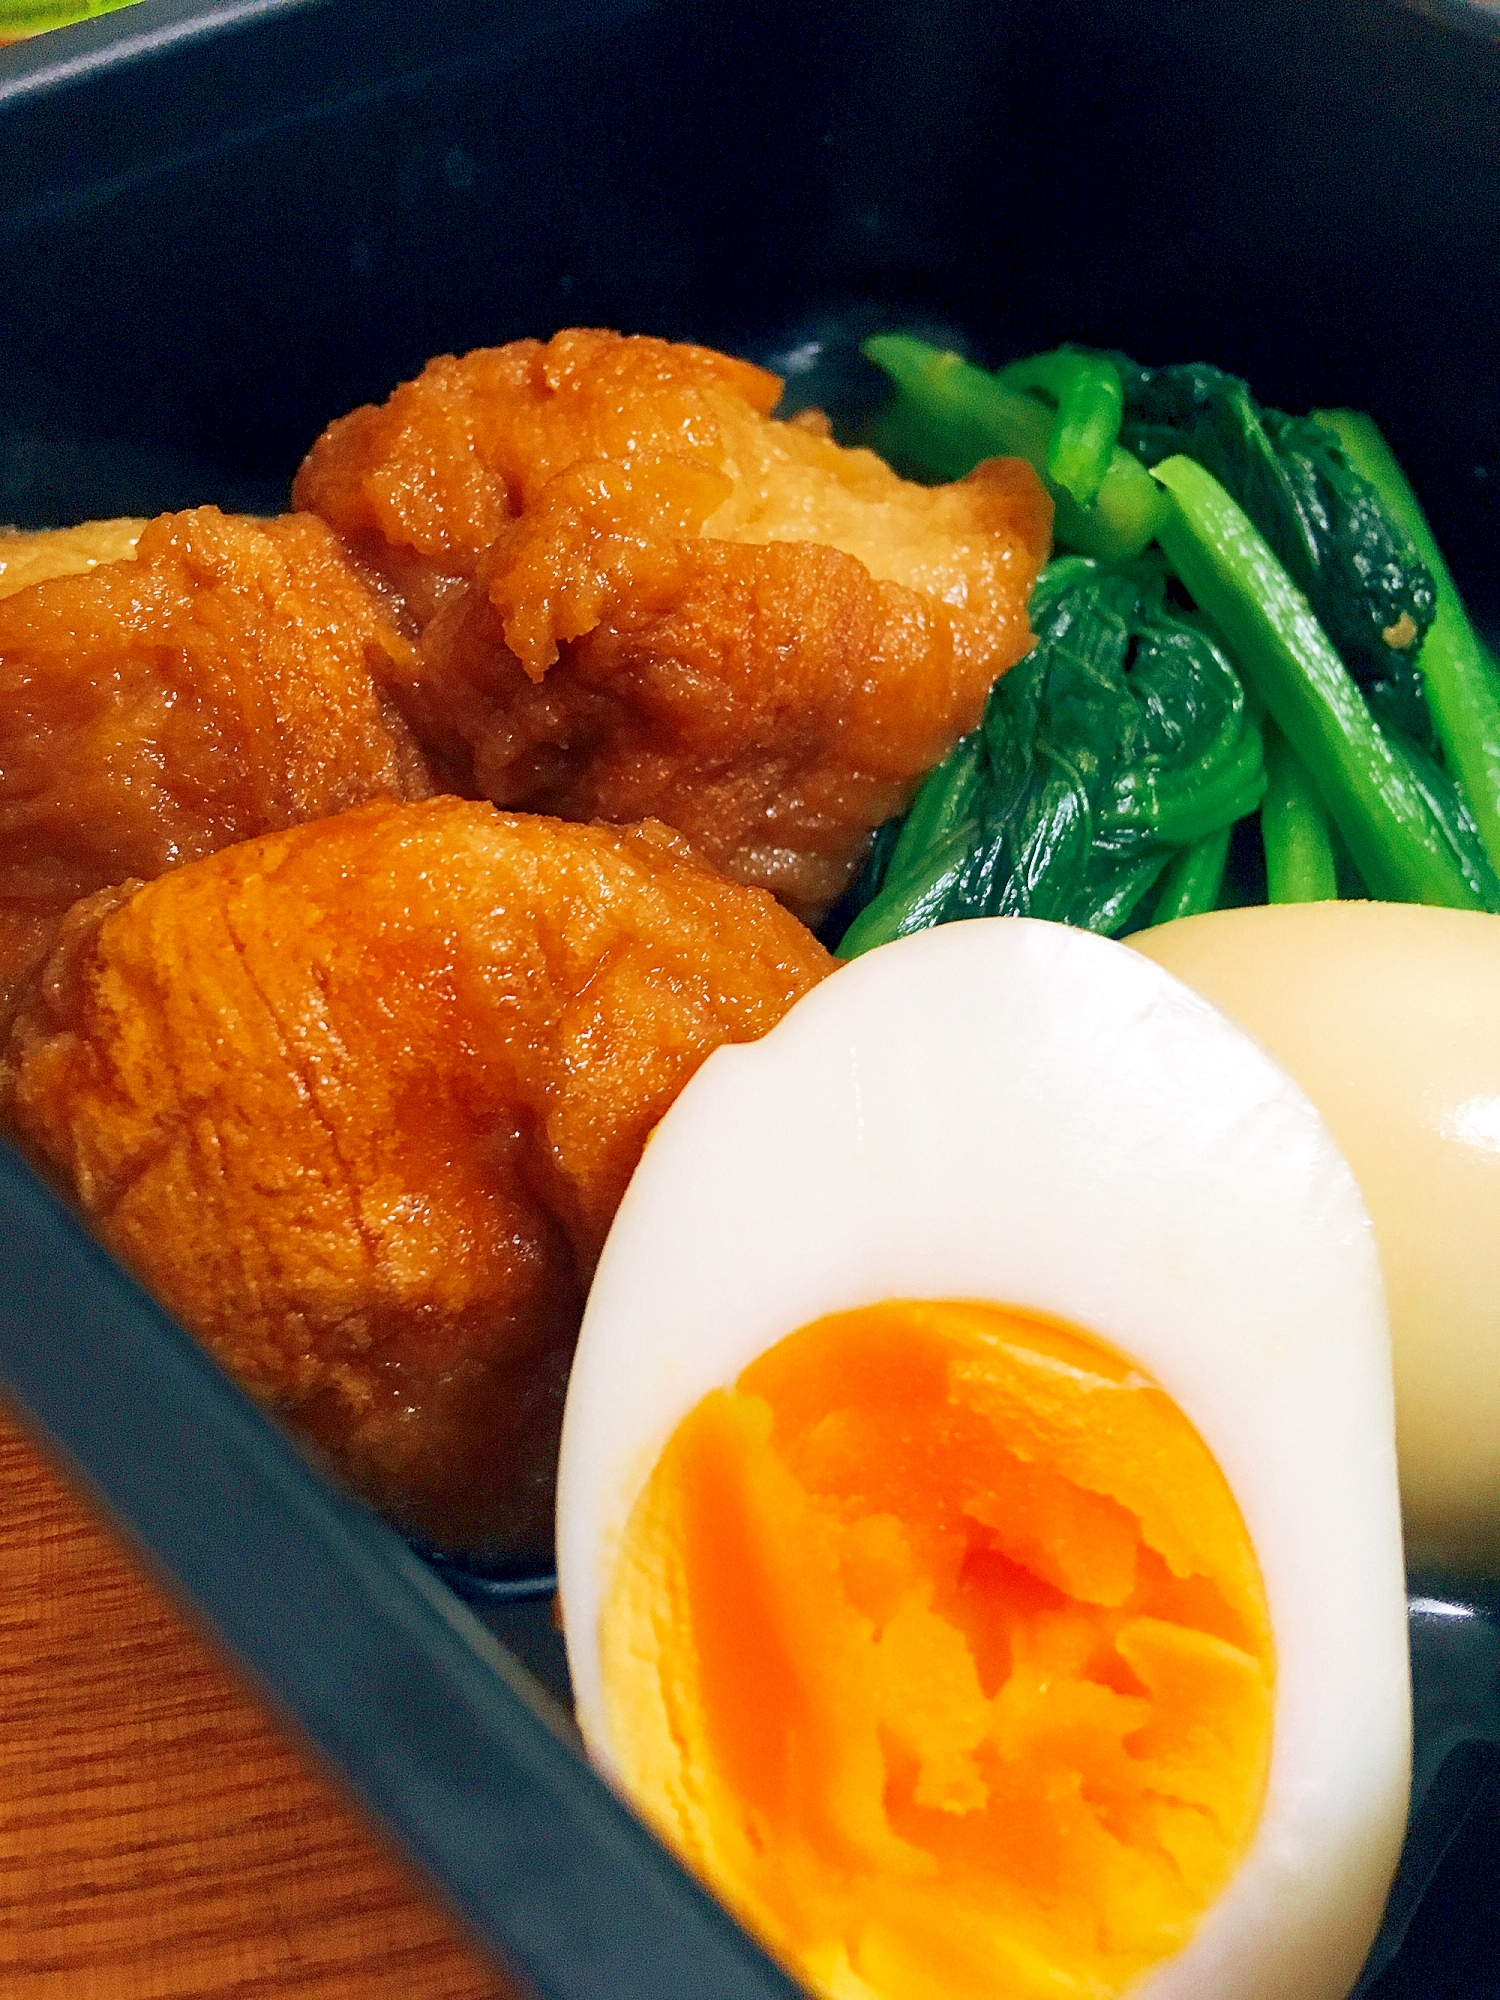 ジューシー♪仙台麩と卵の甘辛煮